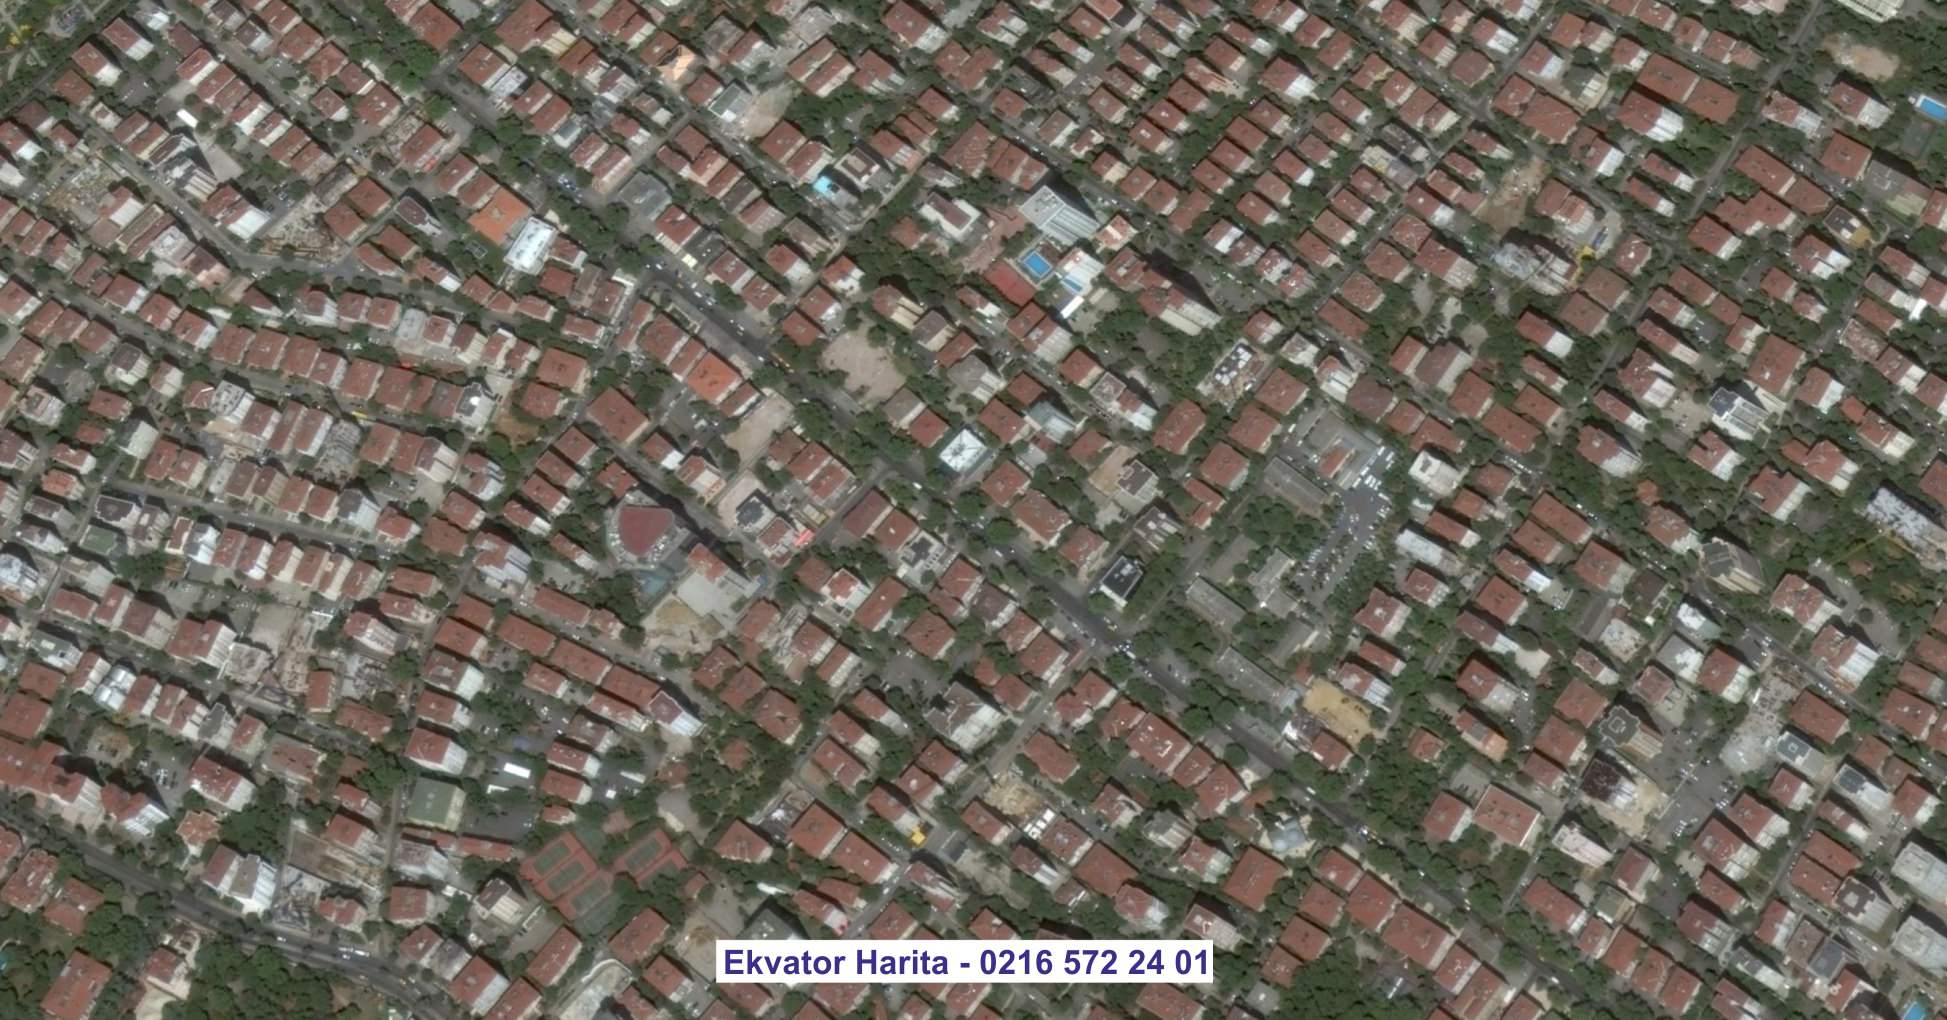 Kartal Uydu Görüntüsü Örnek Fotoğrafı